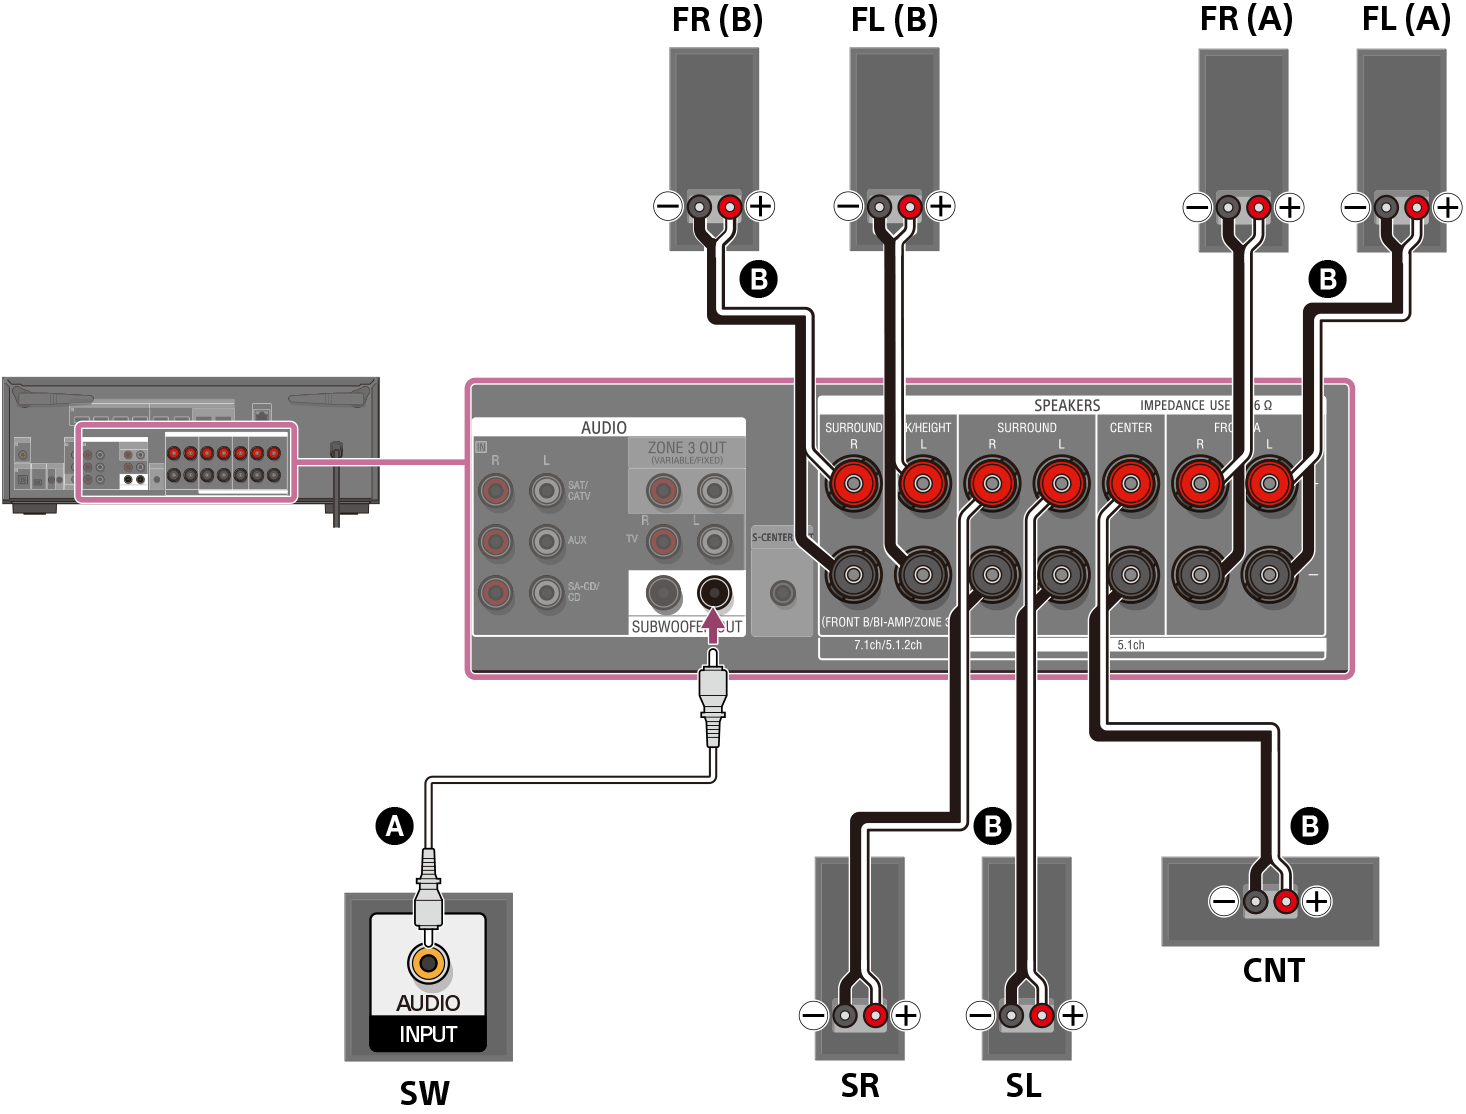 Ilustración de cómo conectar cada altavoz a los terminales de altavoz de la parte trasera de la unidad. Conecte los altavoces A delanteros izquierdo y derecho, los altavoces B delanteros izquierdo y derecho, los altavoces envolventes izquierdo y derecho, y el altavoz central a sus terminales de altavoz respectivos utilizando cables de altavoz (no incluidos). Conecte el altavoz potenciador de graves al terminal SUBWOOFER OUT con un cable de audio monofónico (no incluido).